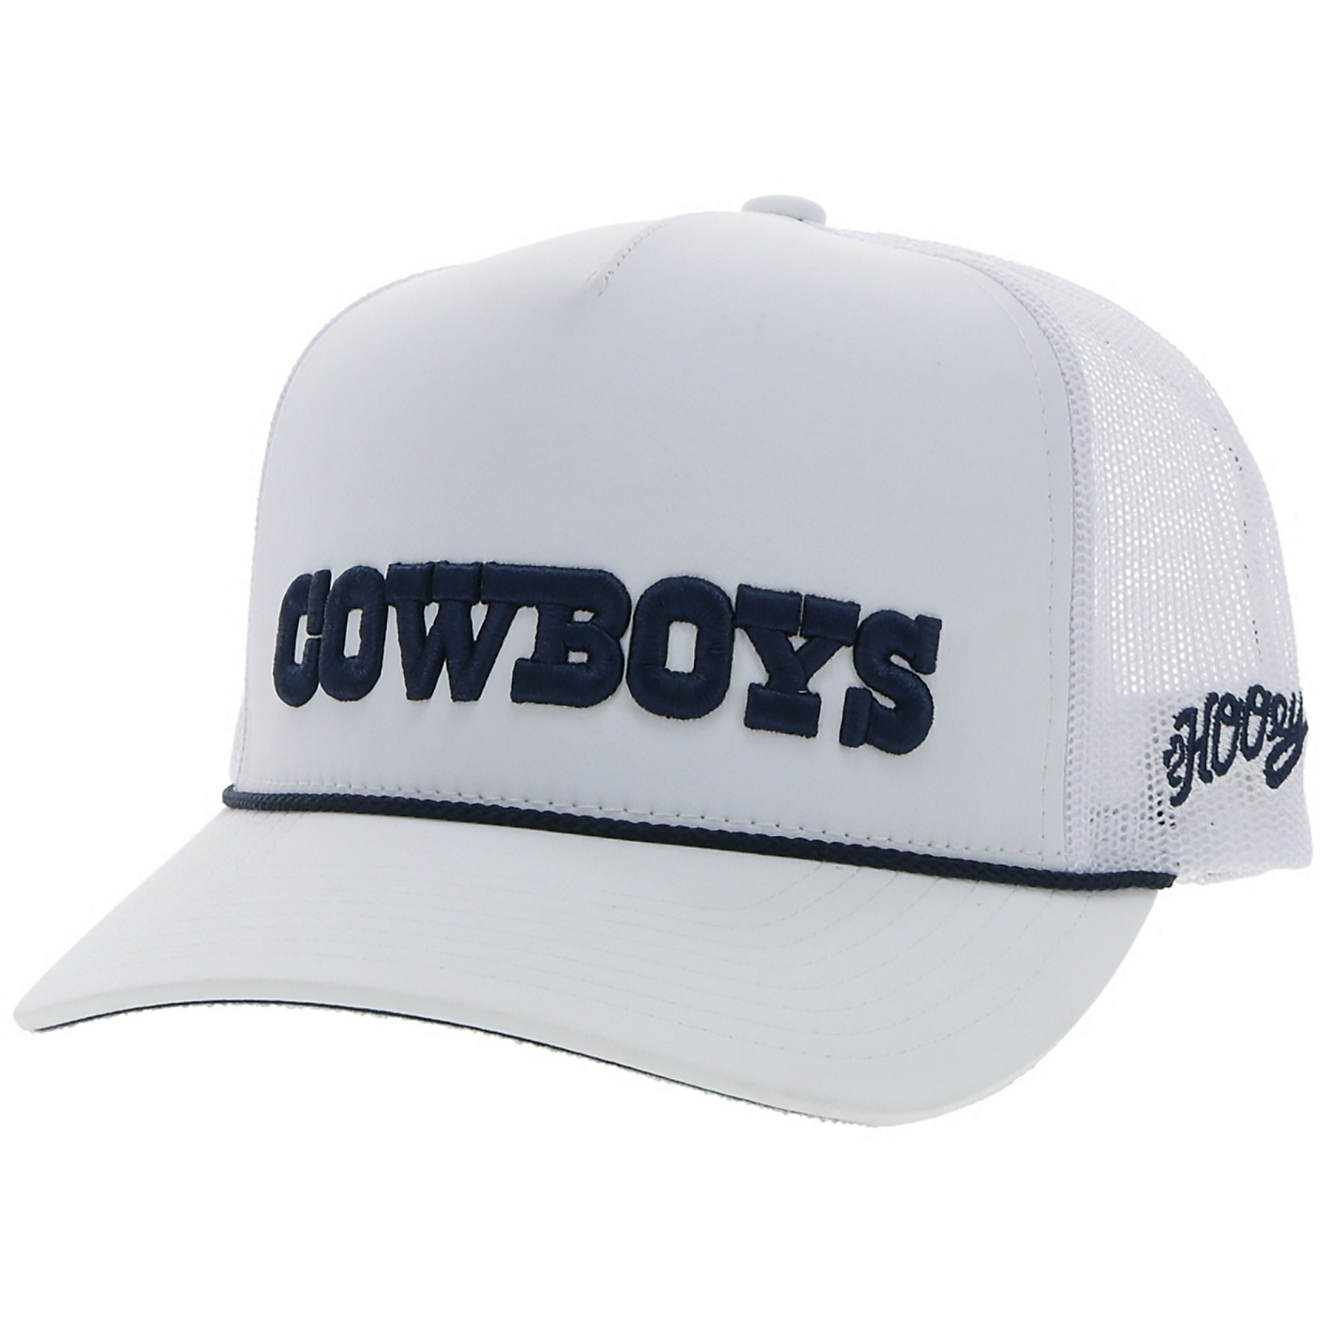 dallas cowboys hat gray